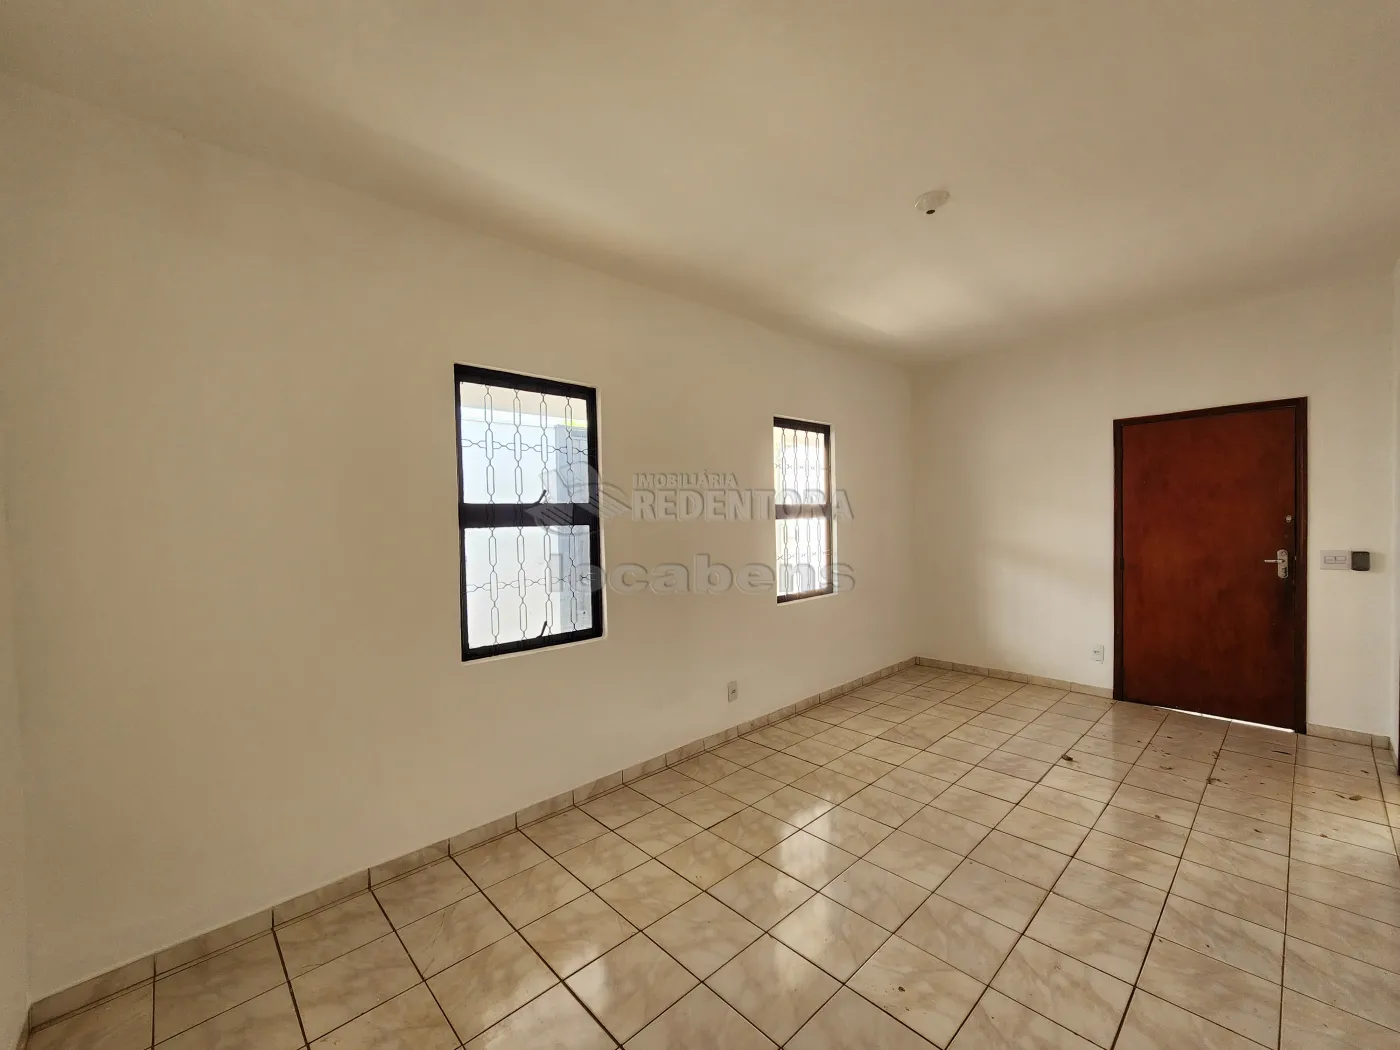 Alugar Casa / Padrão em São José do Rio Preto R$ 2.200,00 - Foto 3